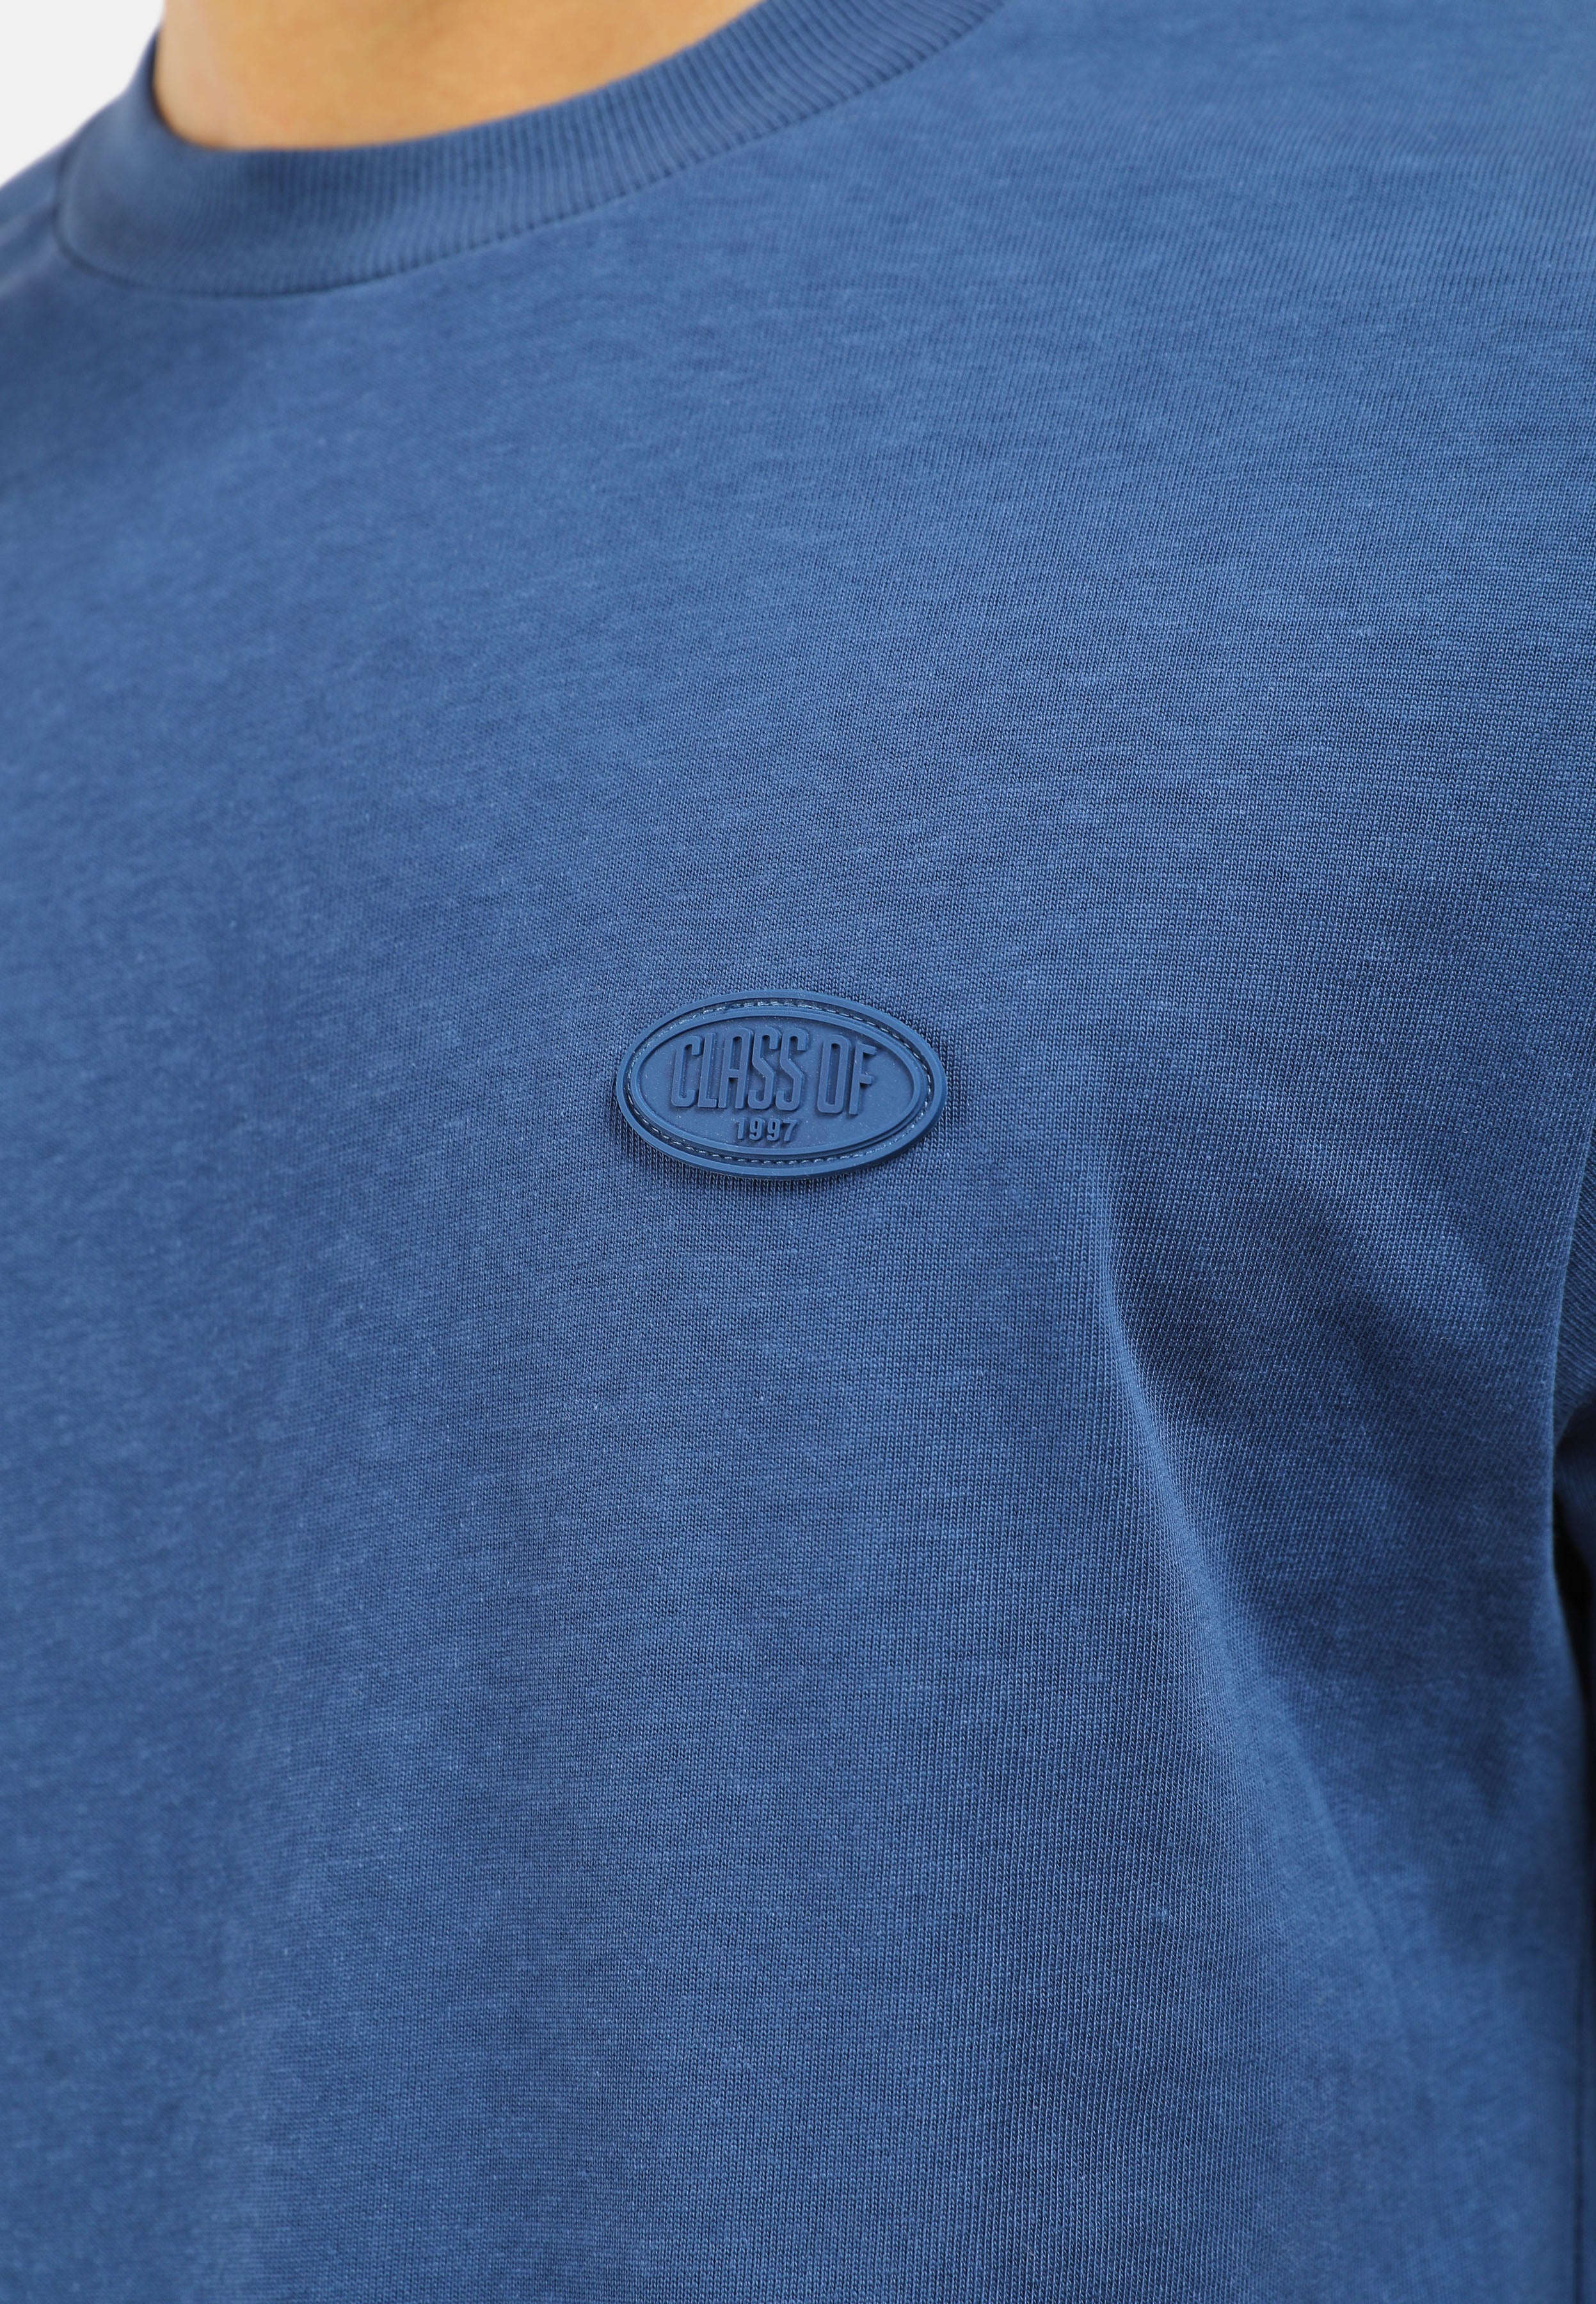 CHEETAH Men Basic Short Sleeves T-Shirt - 99096 (MD-LM)